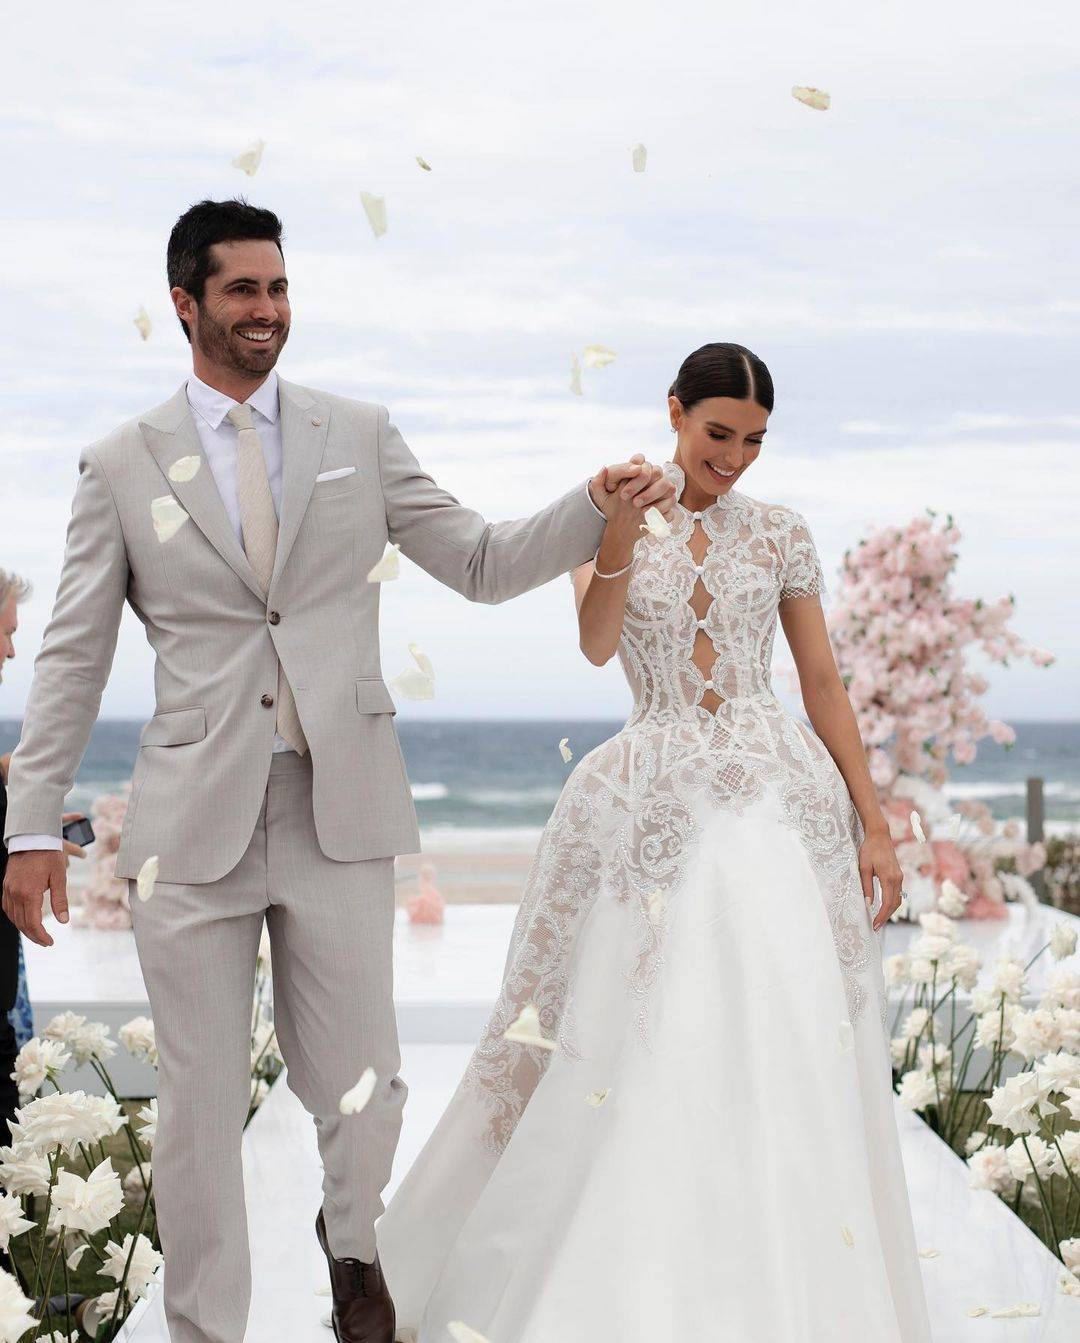 Beauty Queen Erin Holland Marries Australian Cricketer Ben Cutting